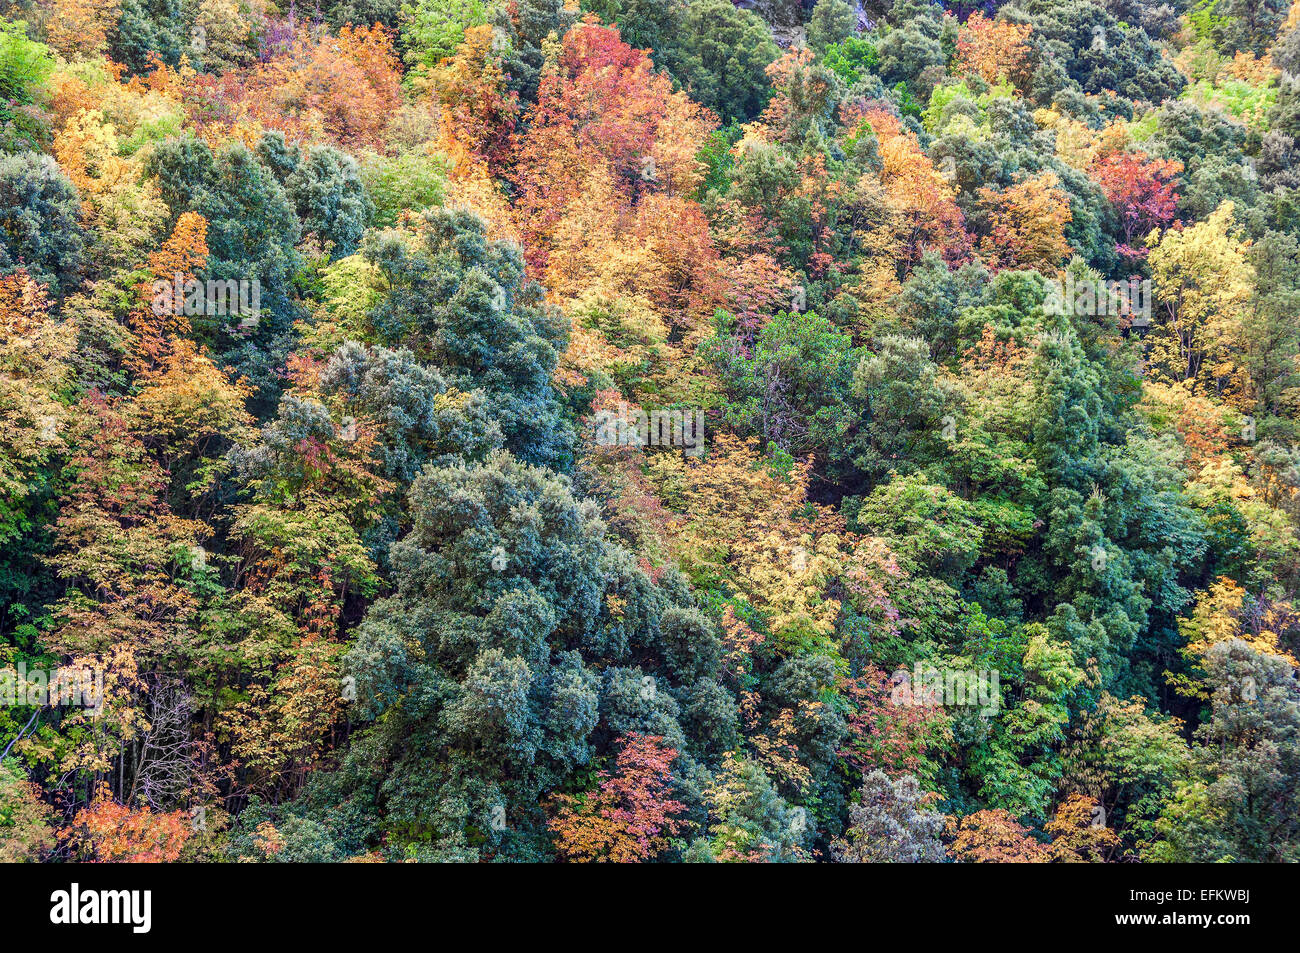 Couleur d'automne sur les arbres parc regional de la restonica haute Corse 2B Foto Stock